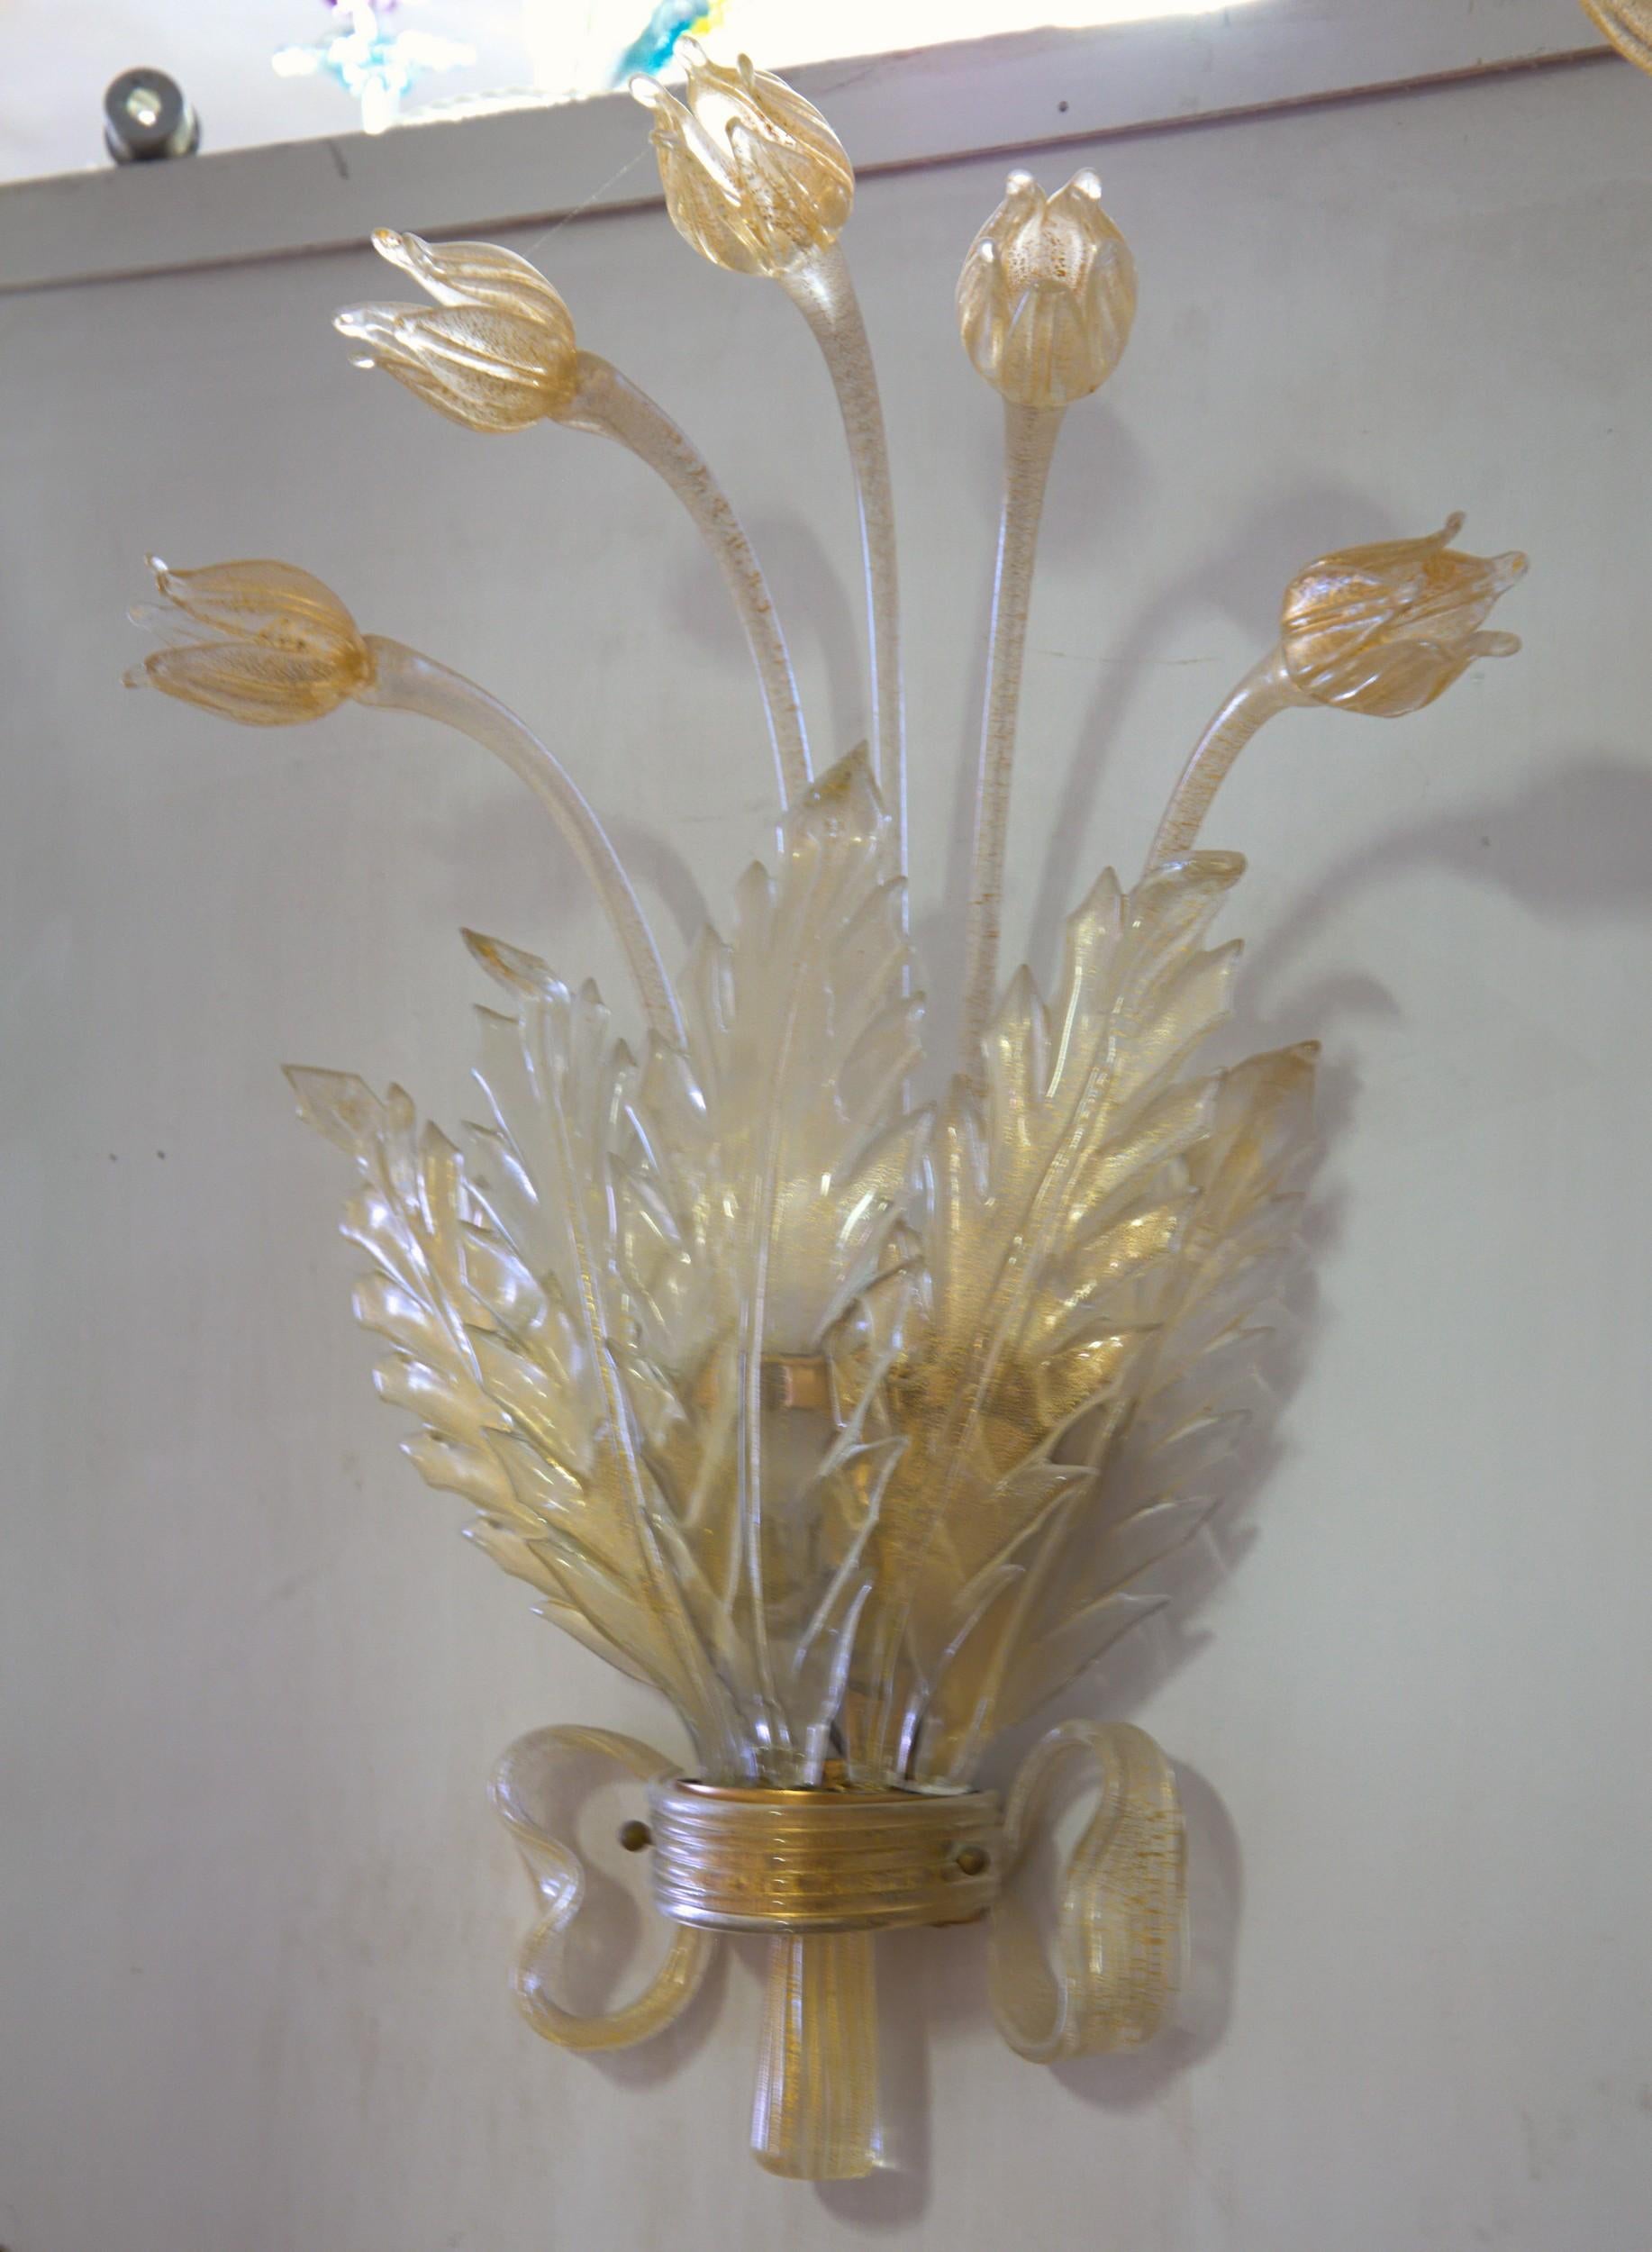 Paire d'appliques de luxe détaillées et élaborées.
La quincaillerie de l'applique est recouverte d'un ruban de verre et accueille 5 feuilles façonnées à la main et 5 tulipes.
La base est ornée d'un nœud ressemblant à un ruban de verre.
Attribué à